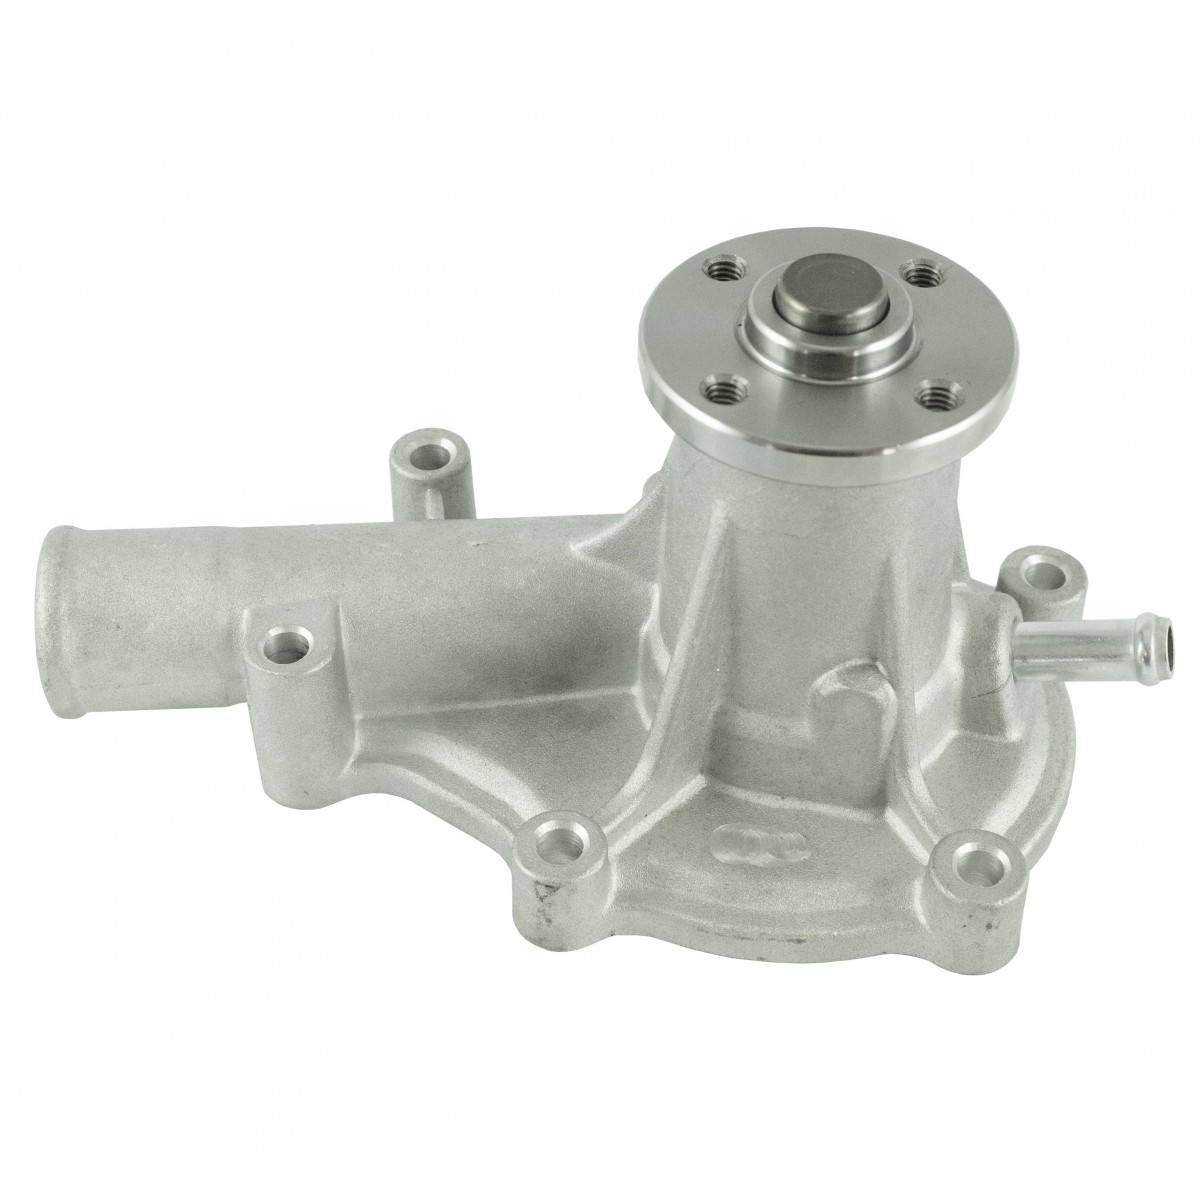 Water pump 16239-73034 / 16241-73034 impeller 69 mm, Kubota V1505